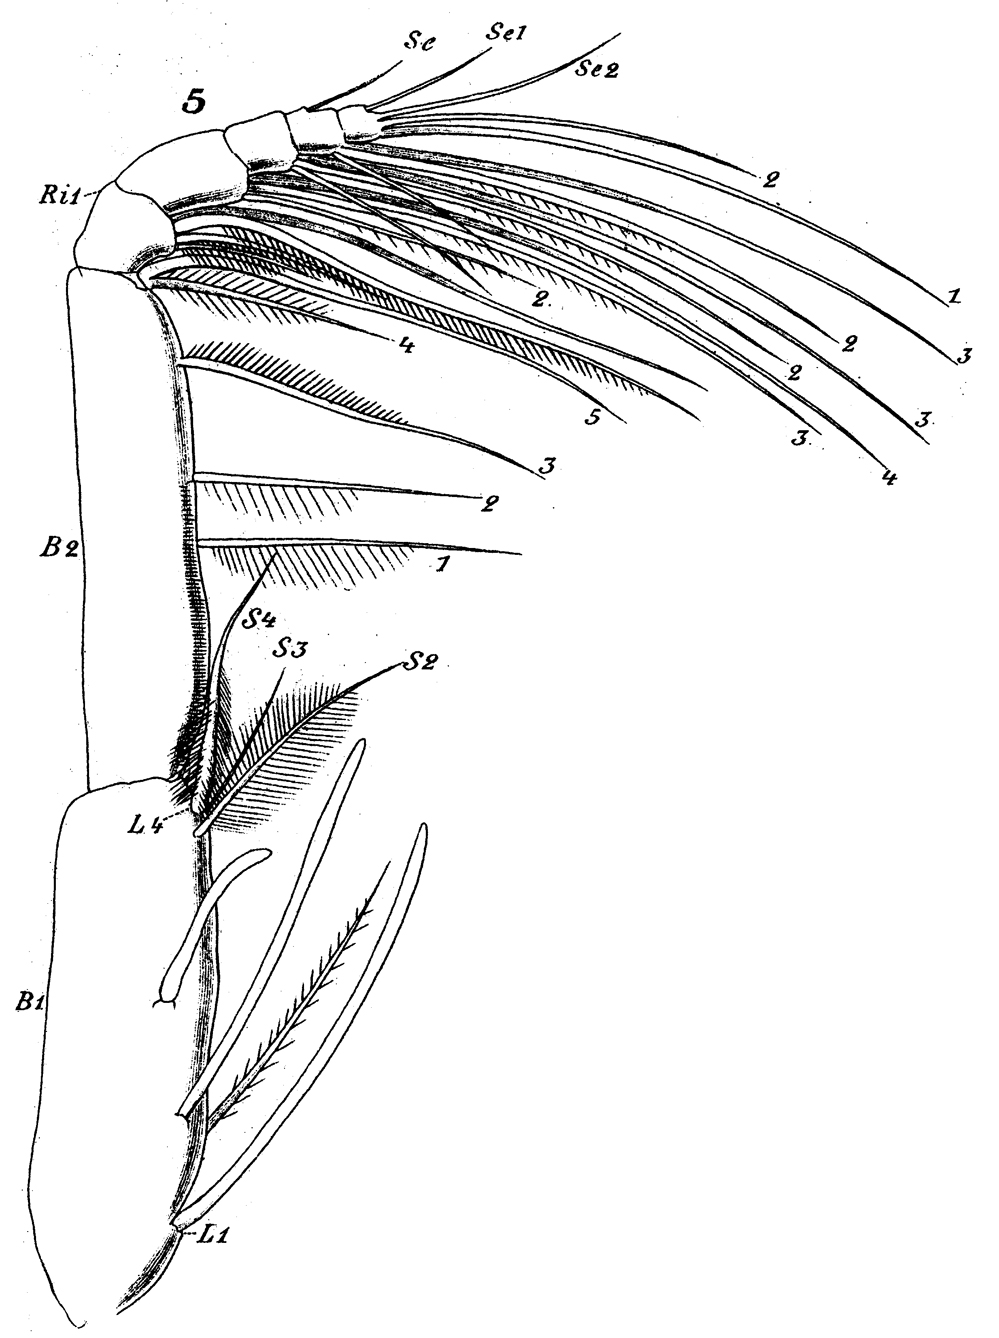 Espèce Scolecithricella profunda - Planche 9 de figures morphologiques